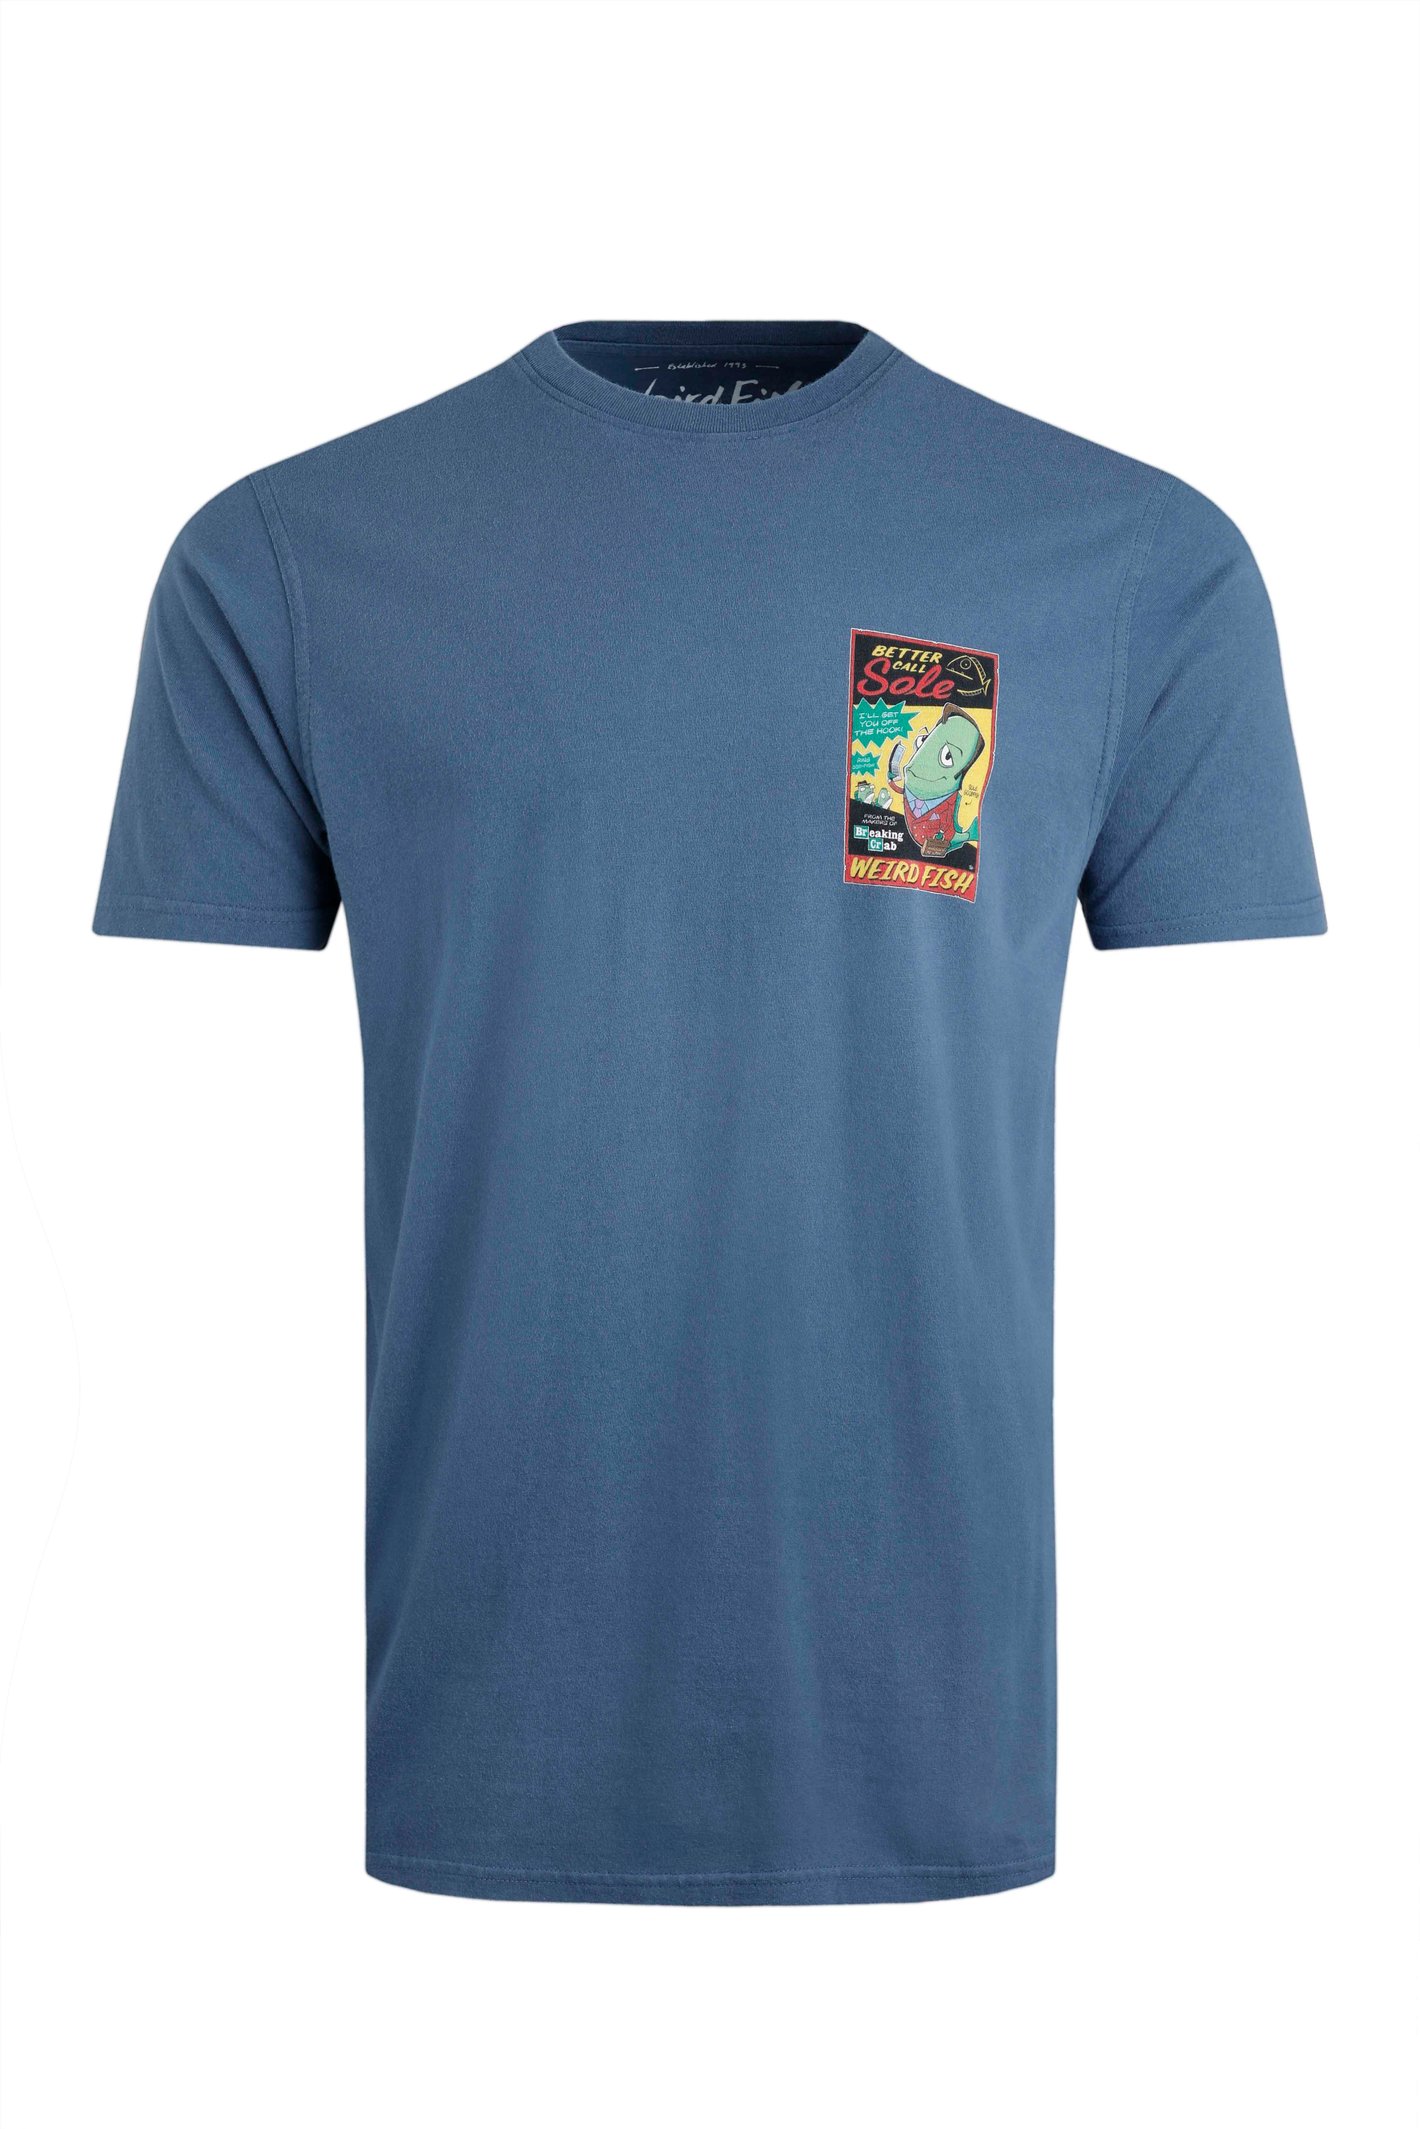 Weird Fish Call Sole Artist T-Shirt Ensign Blue Size 2XL